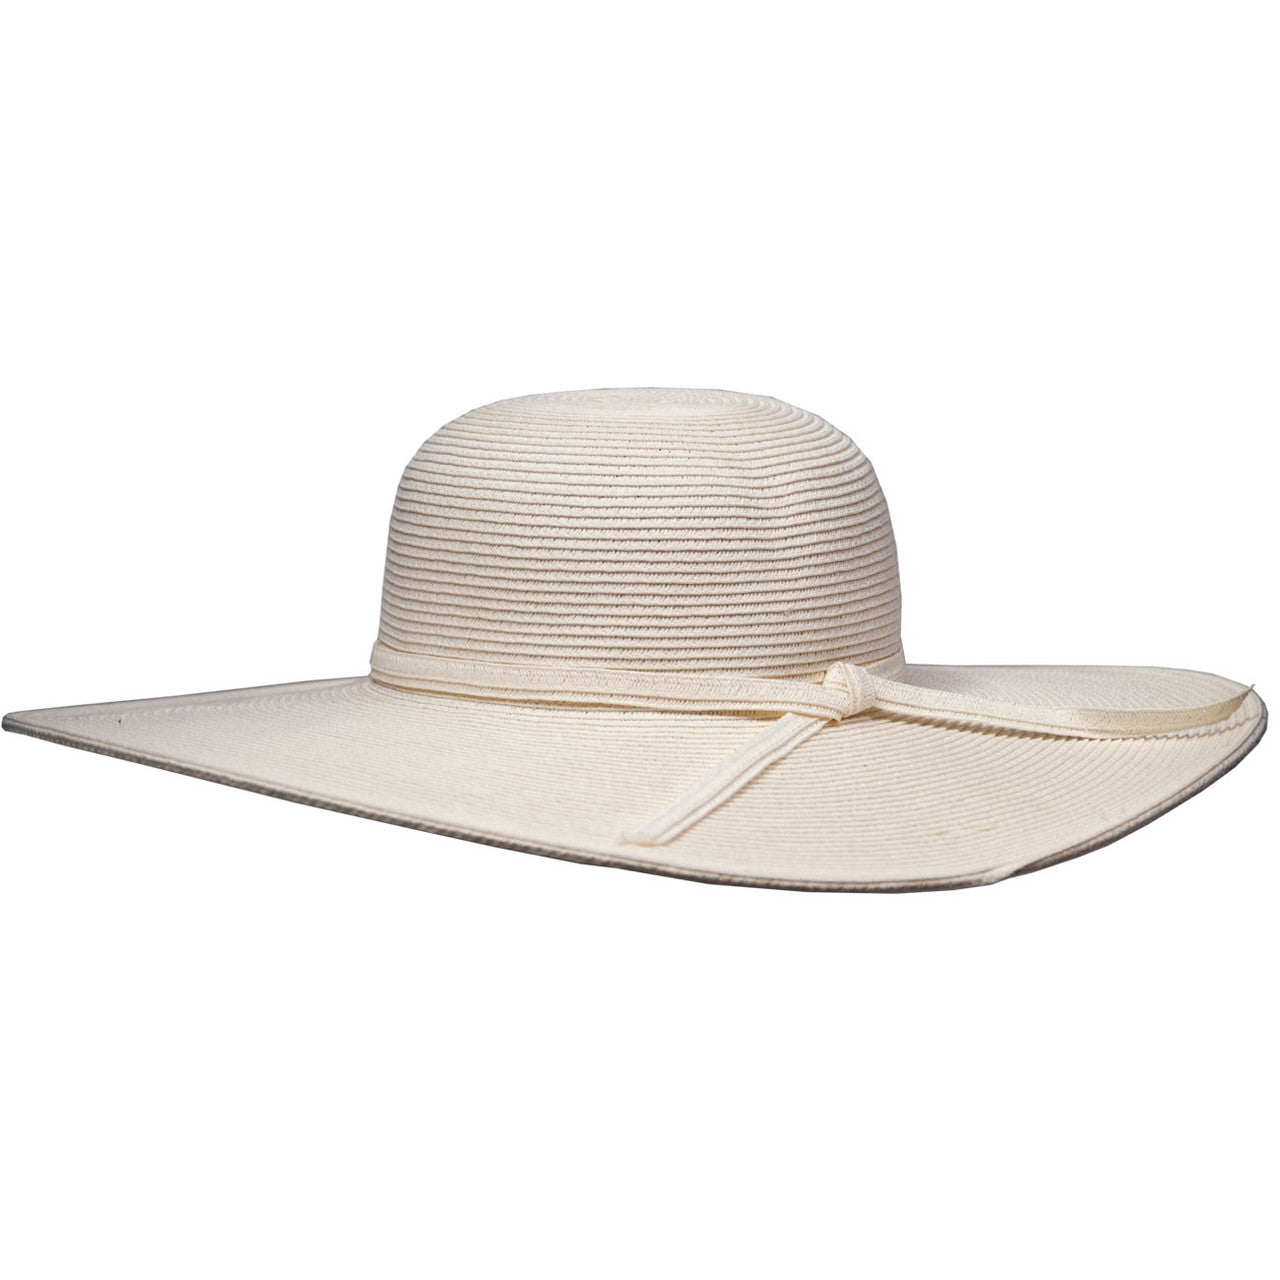 Saint Martin | 5 Flat Brim Sun Hat | Hats Unlimited Tan / One Size Fits Most Female